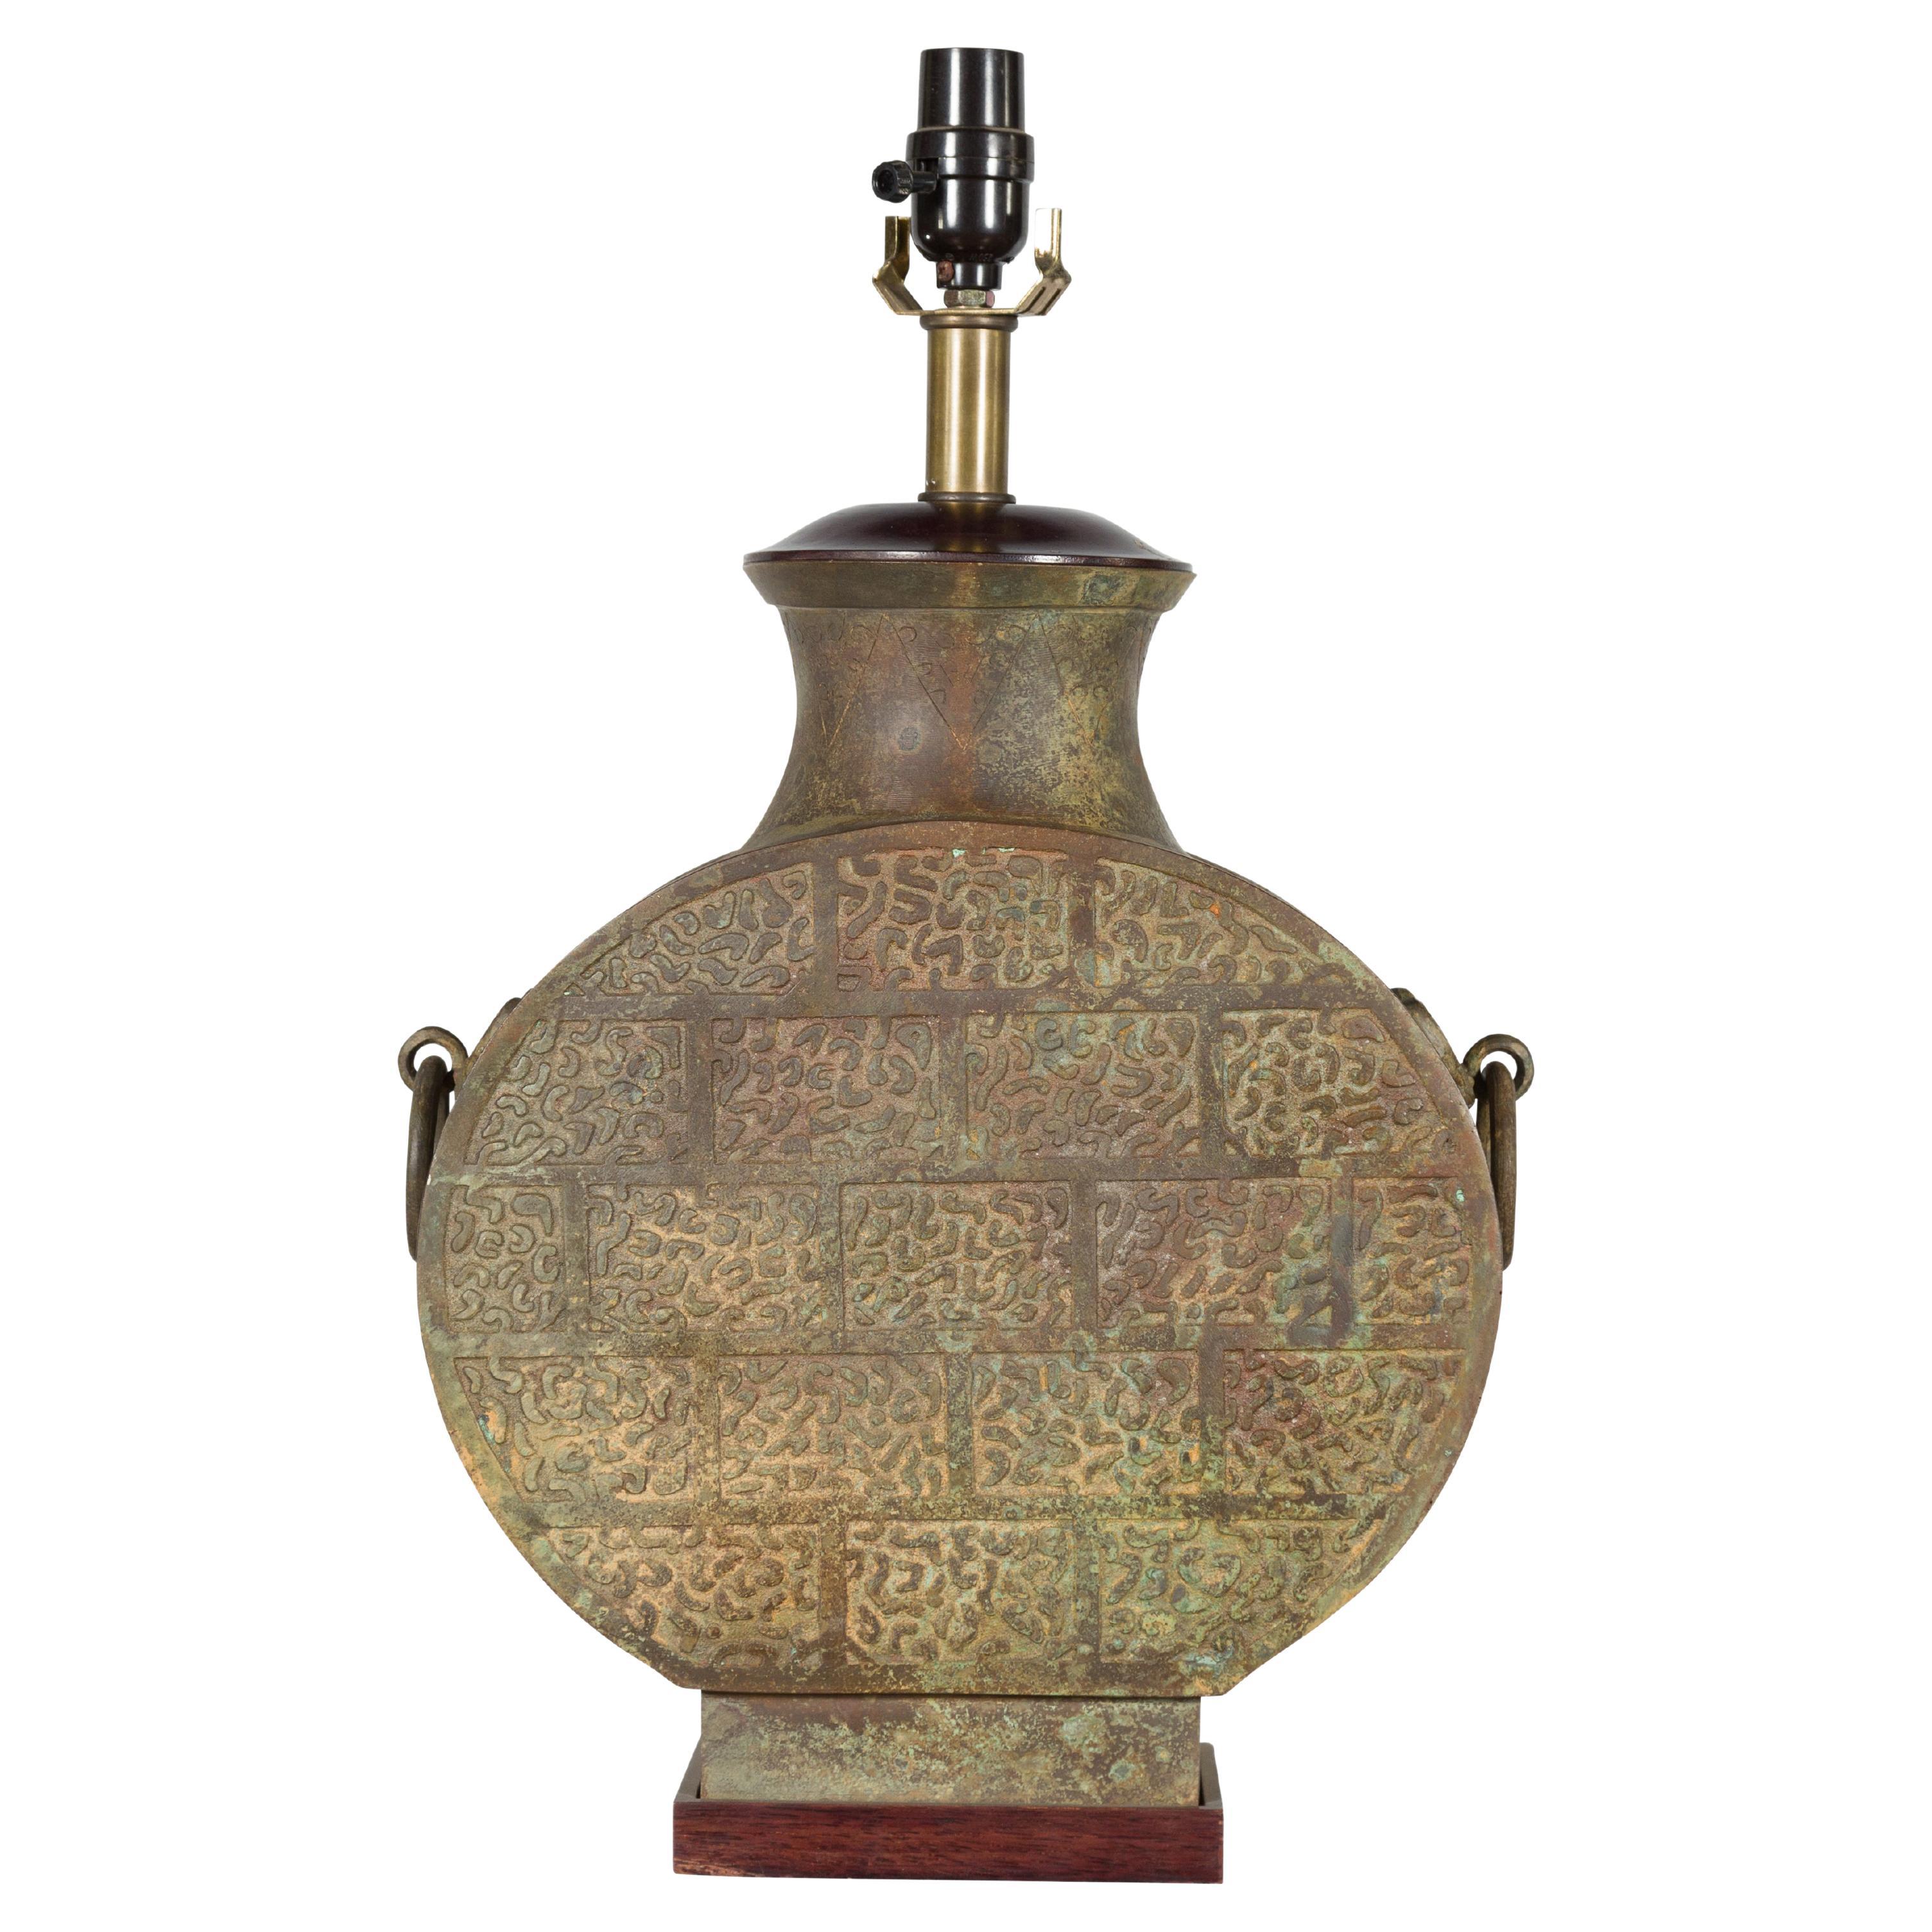 Vintage Bronze Han Stil Tischlampe verdrahtet fr die USA auf hlzernen Basis